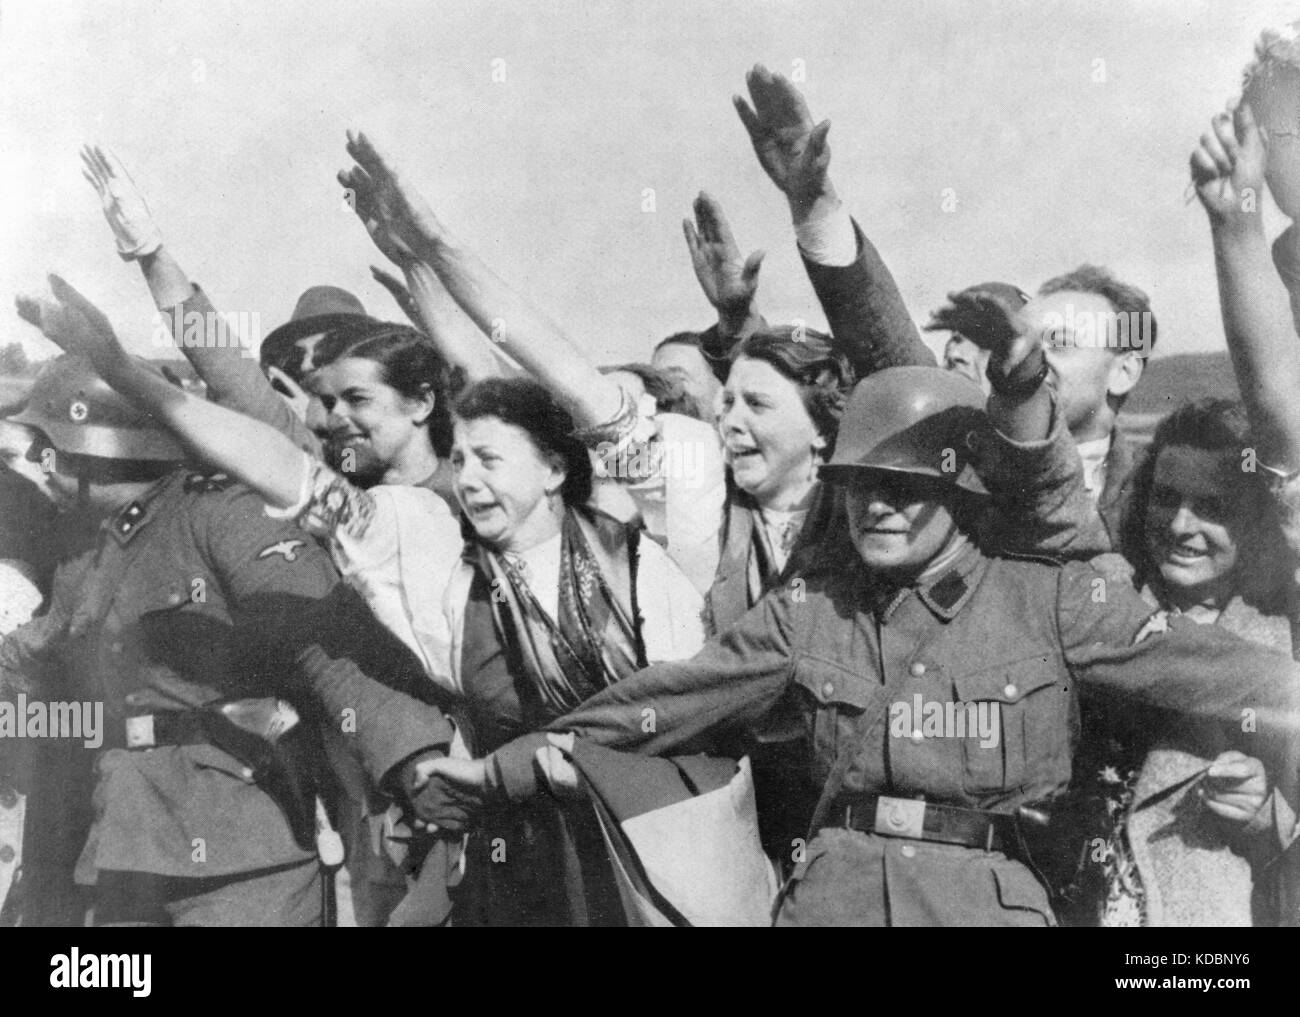 Sudetendeutsche Frauen begrüßen die deutsche Armee 1938 im Sudetenland. Sudetenland (Teil der Tschechoslowakei) wurde zwischen dem 1. Oktober und 10. Oktober 1938 nach Deutschland abgesetzt. Stockfoto